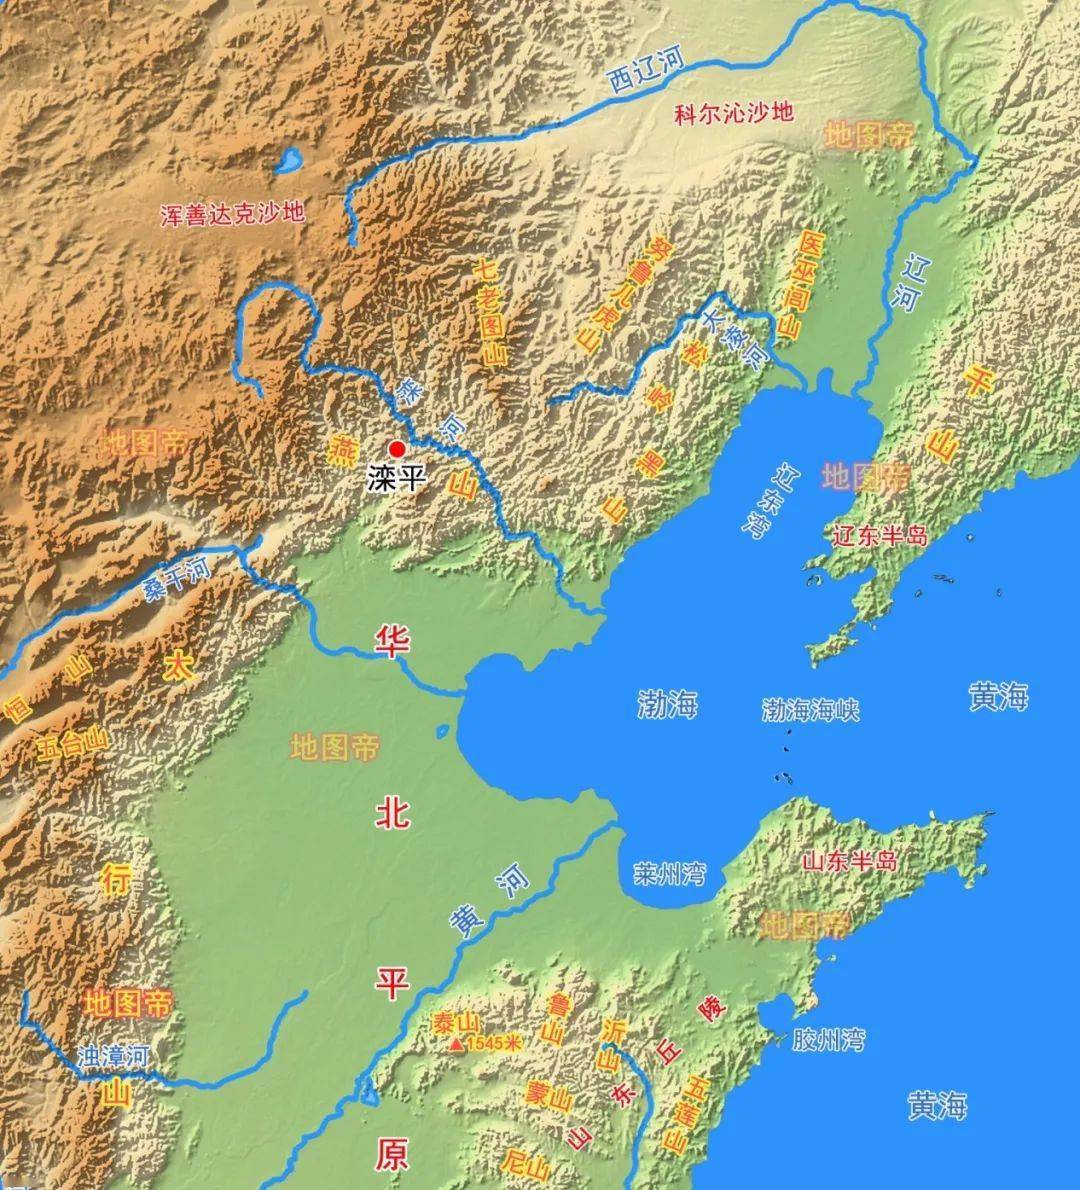 滦平县是河北省承德市下辖县,总面积3213平方千米,位于承德市西部